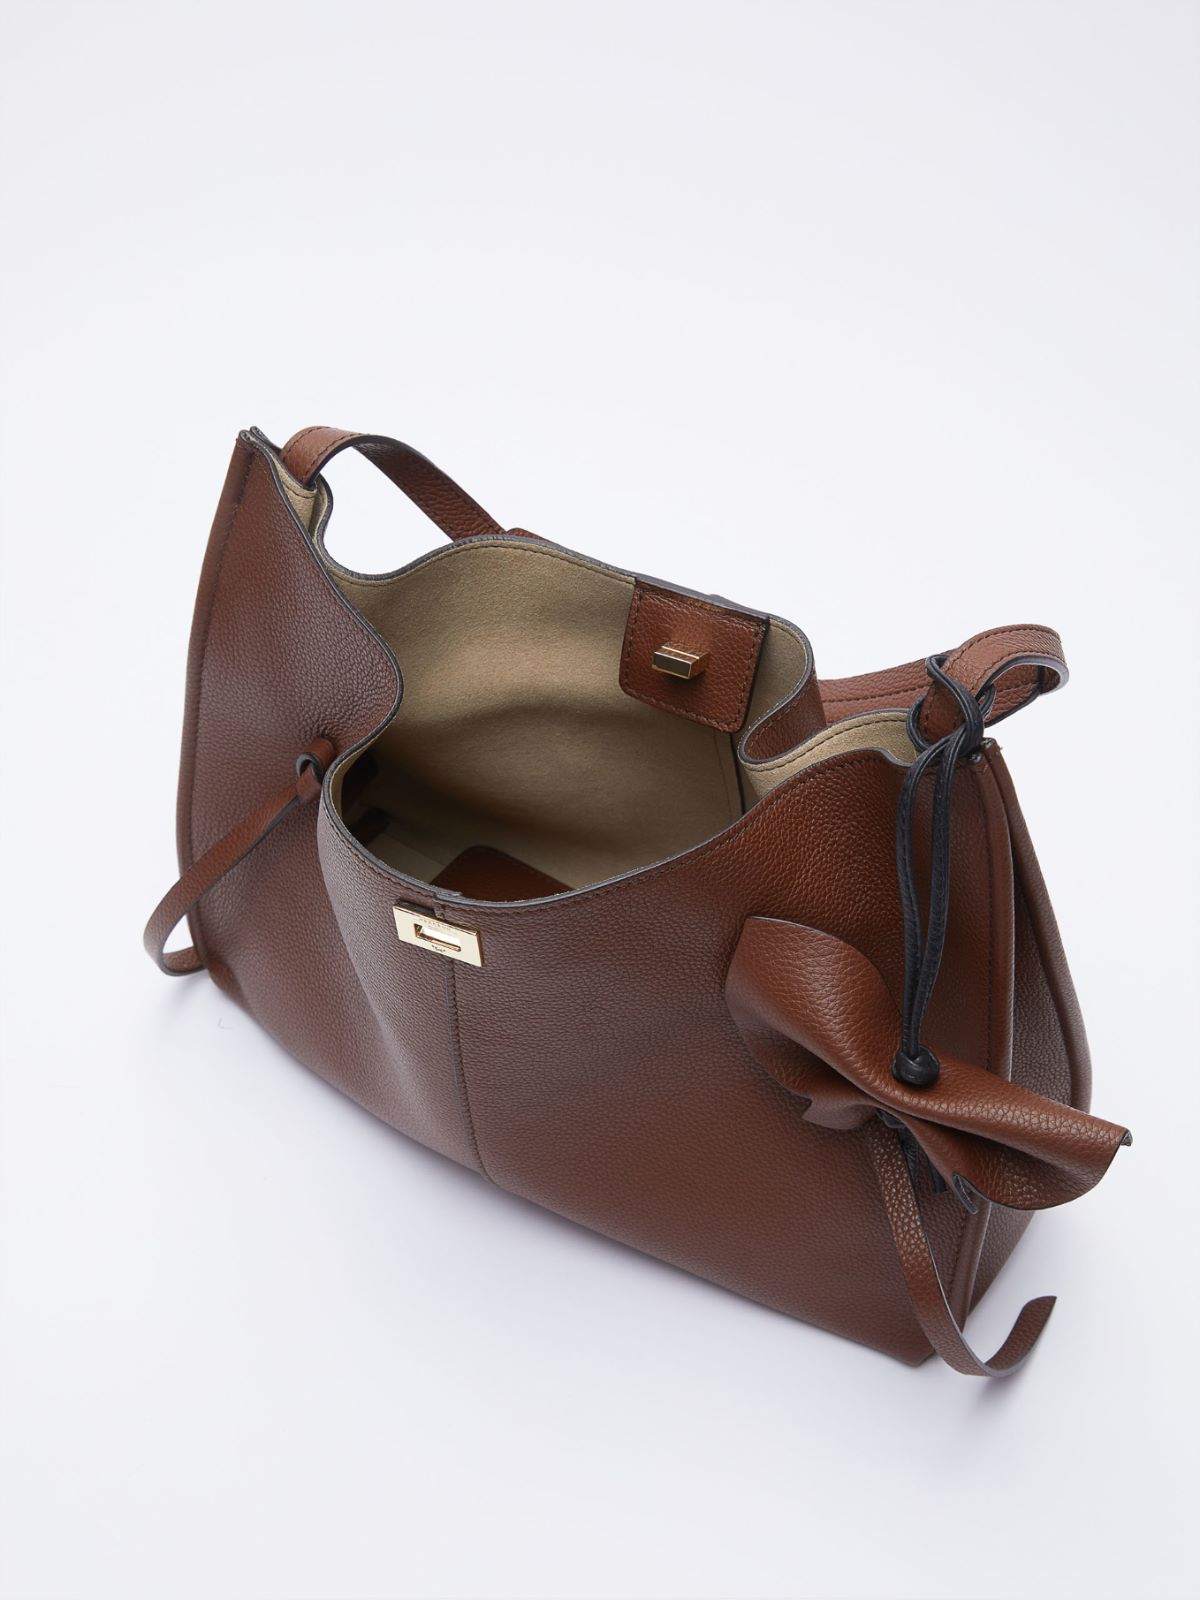 Leather bucket bag - TOBACCO - Weekend Max Mara - 5